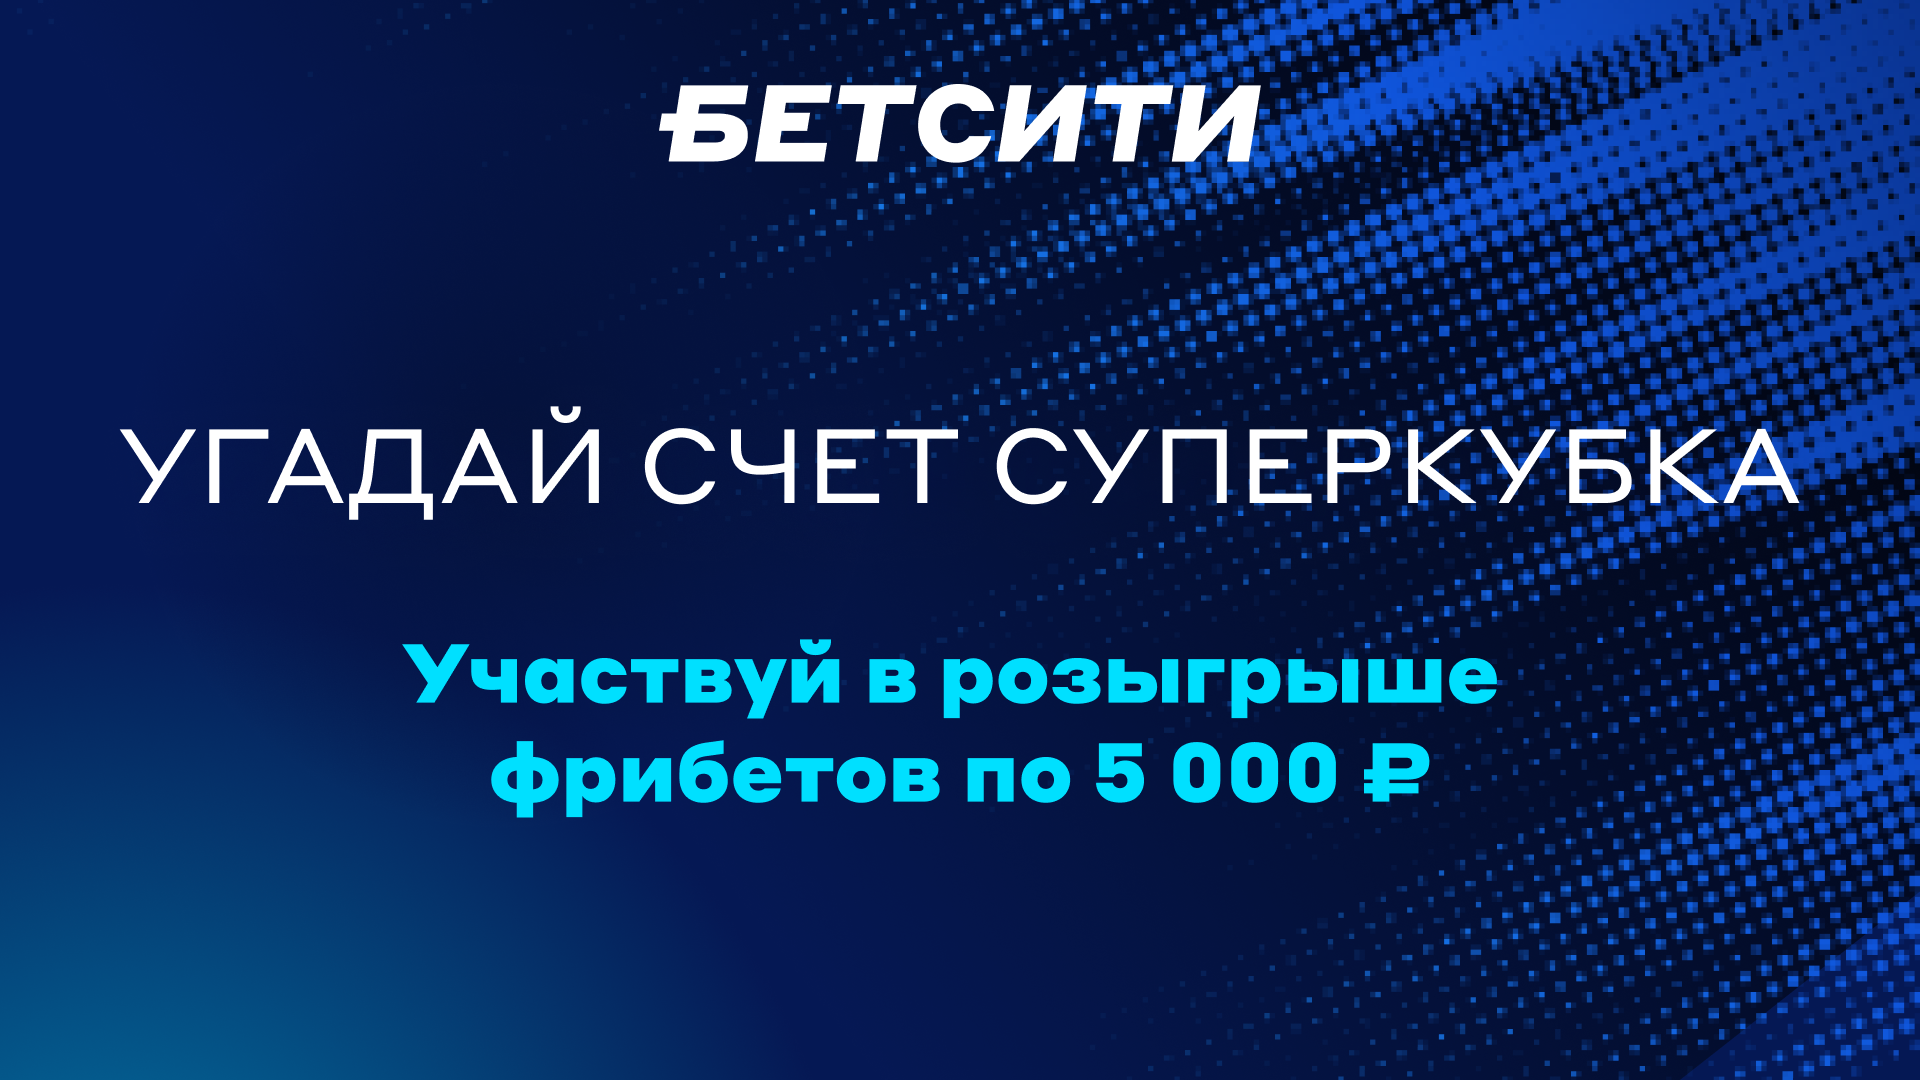 «Бетсити» дарит фрибеты за прогнозы на Суперкубок России